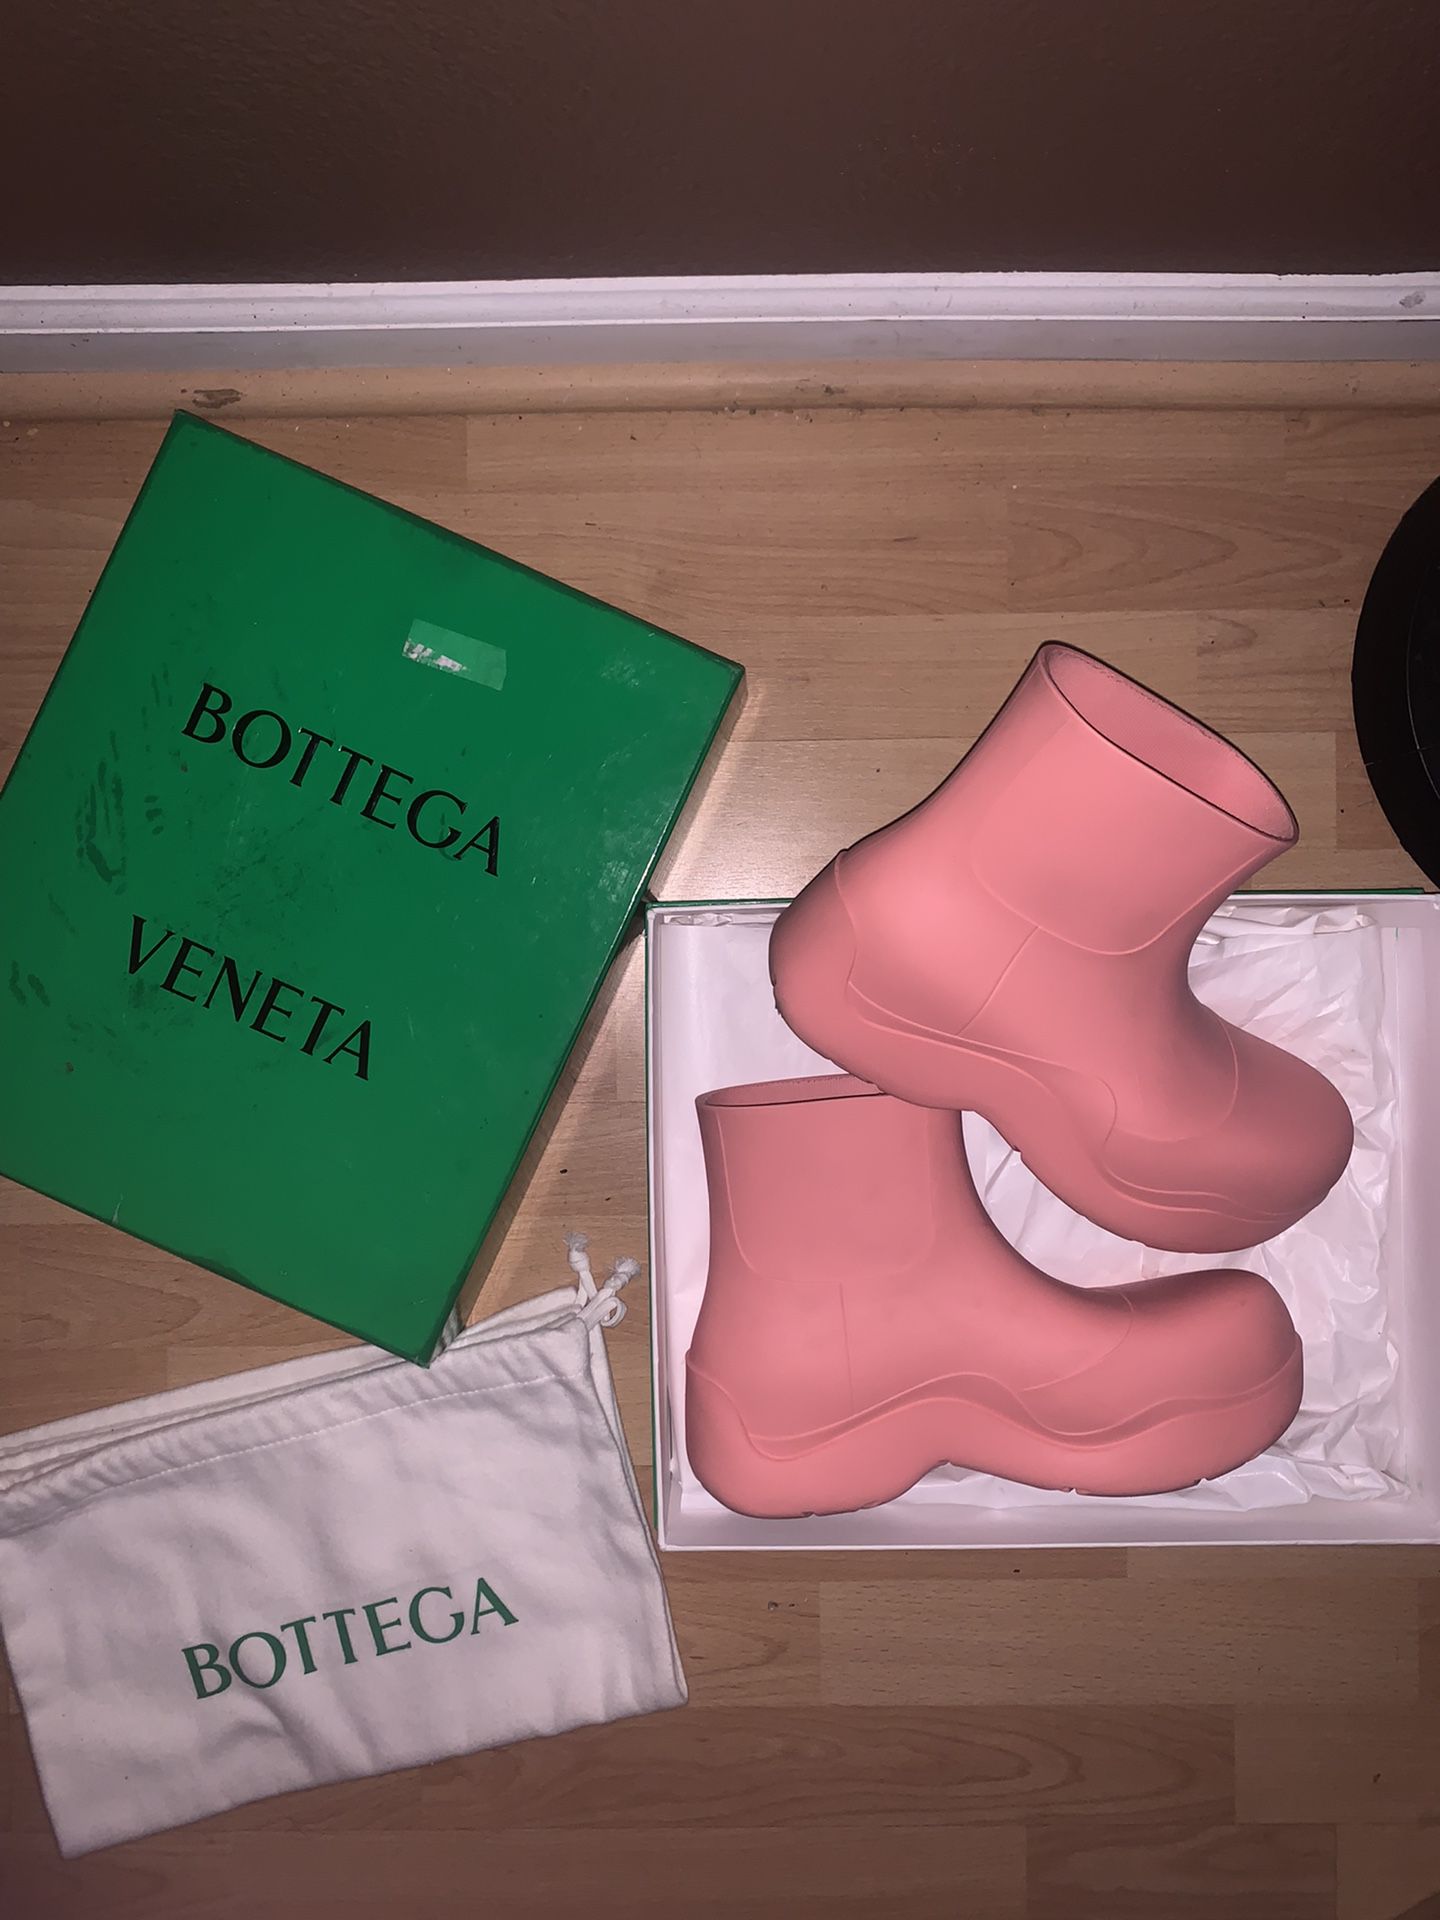 Bottega Veneta Puddle Boots “flamingo” Size 41 (US 8) [fits Like 8.5]